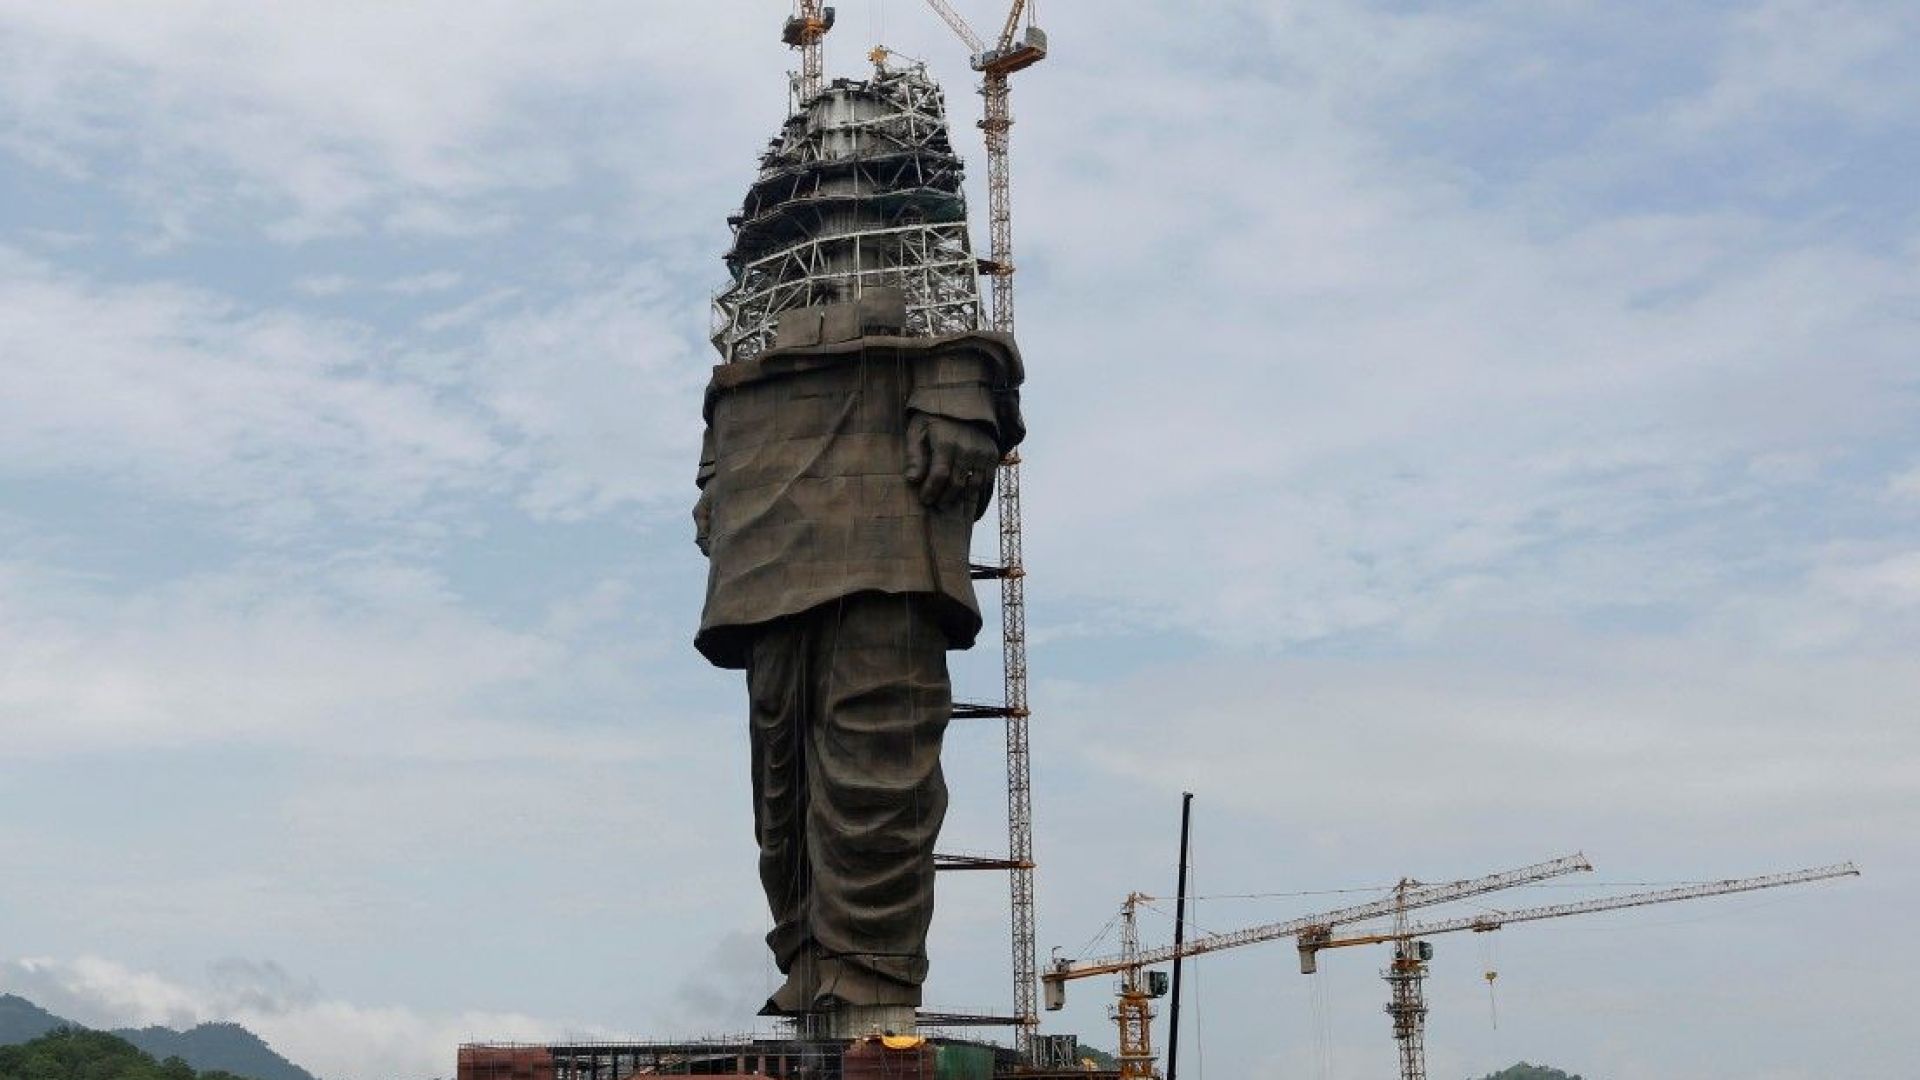 Най-високата статуя в света - 182 метра, добива форма. Статуята